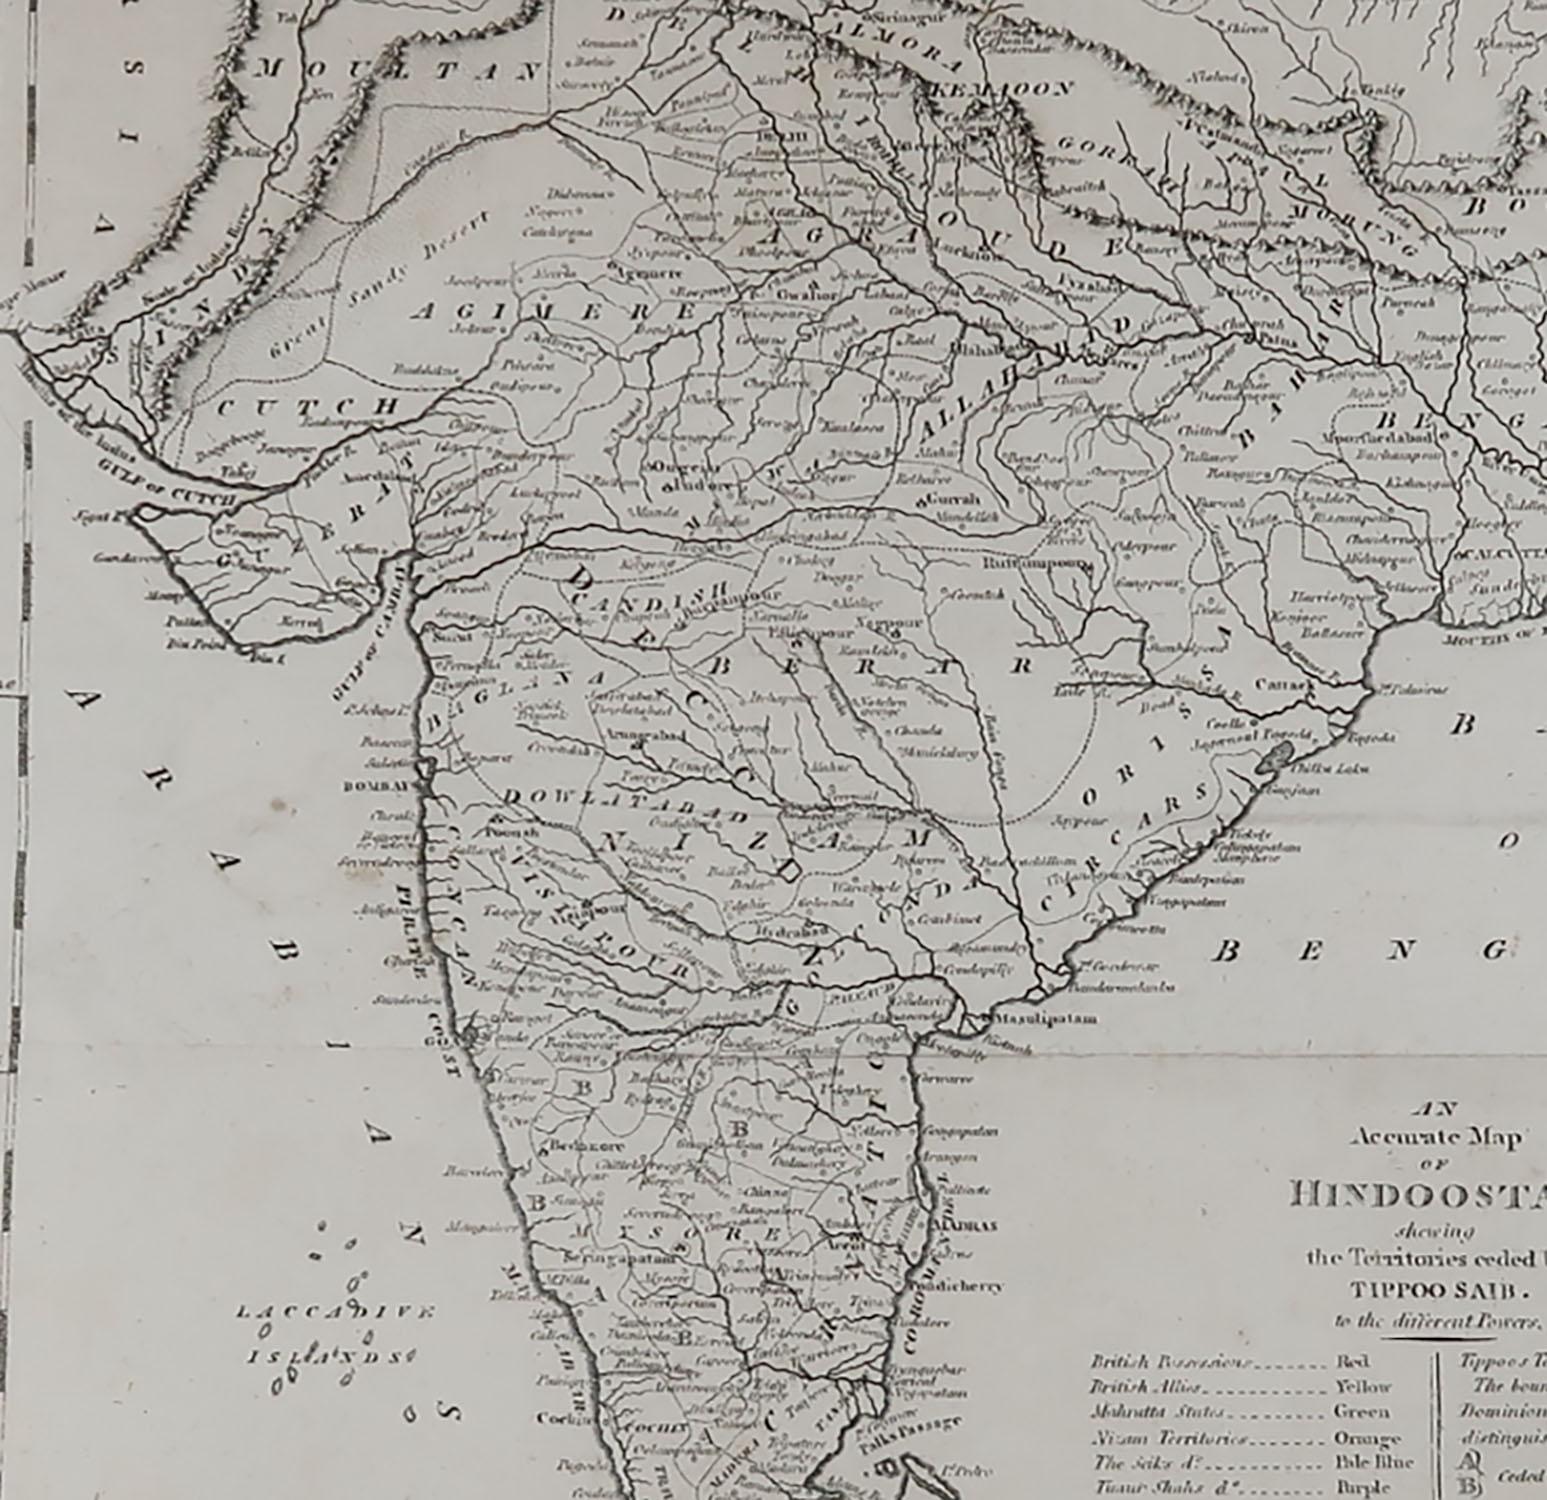 Other Original Antique Map of India, circa 1820